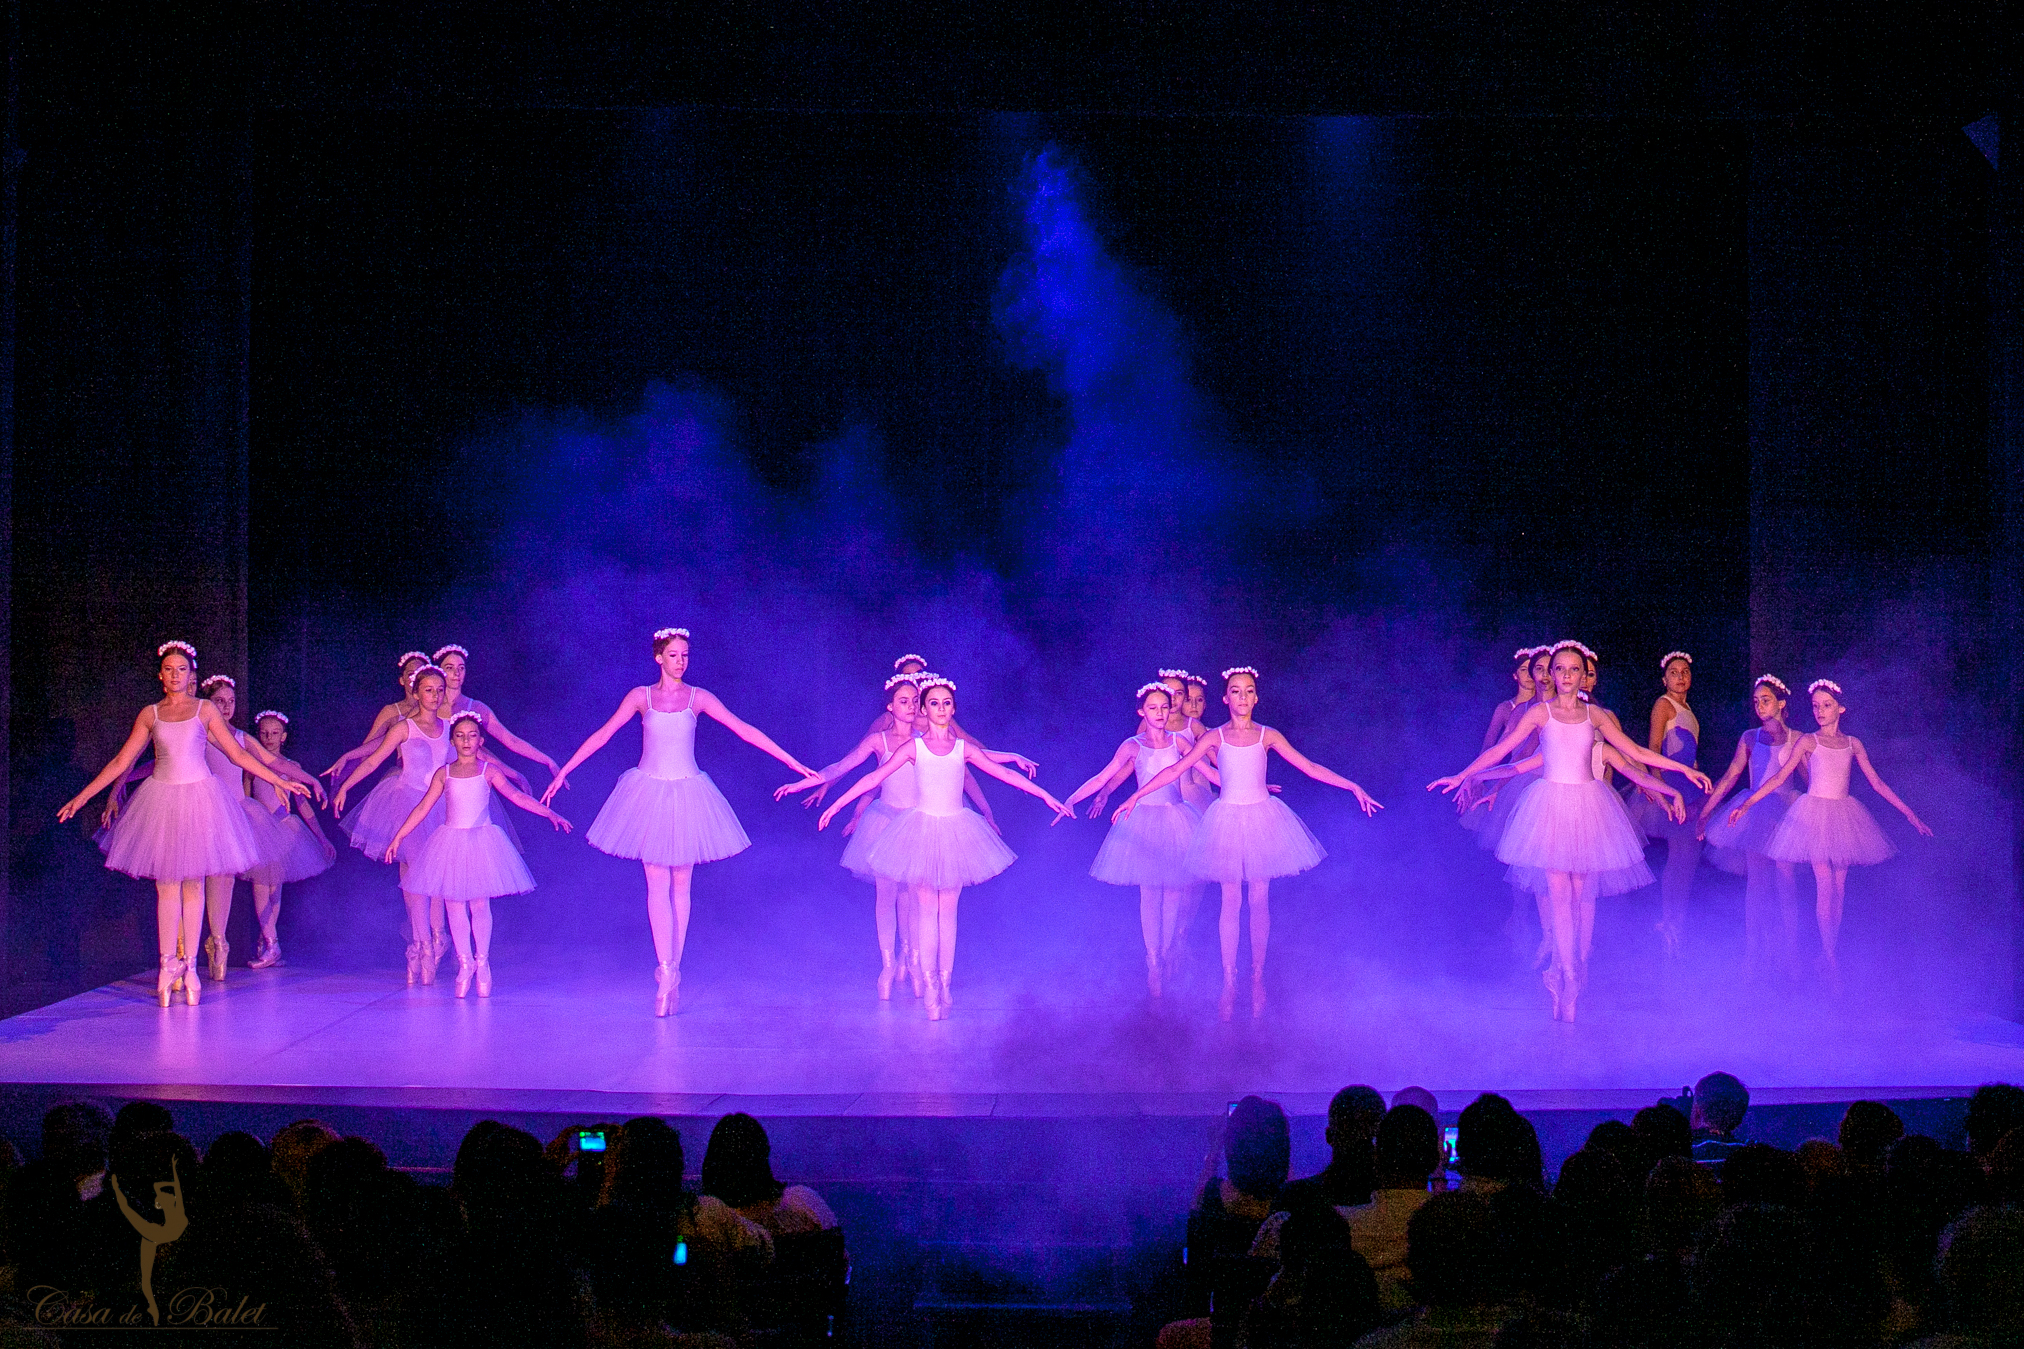 Casa de Balet Spectacol 12iun2015 ora 19-59